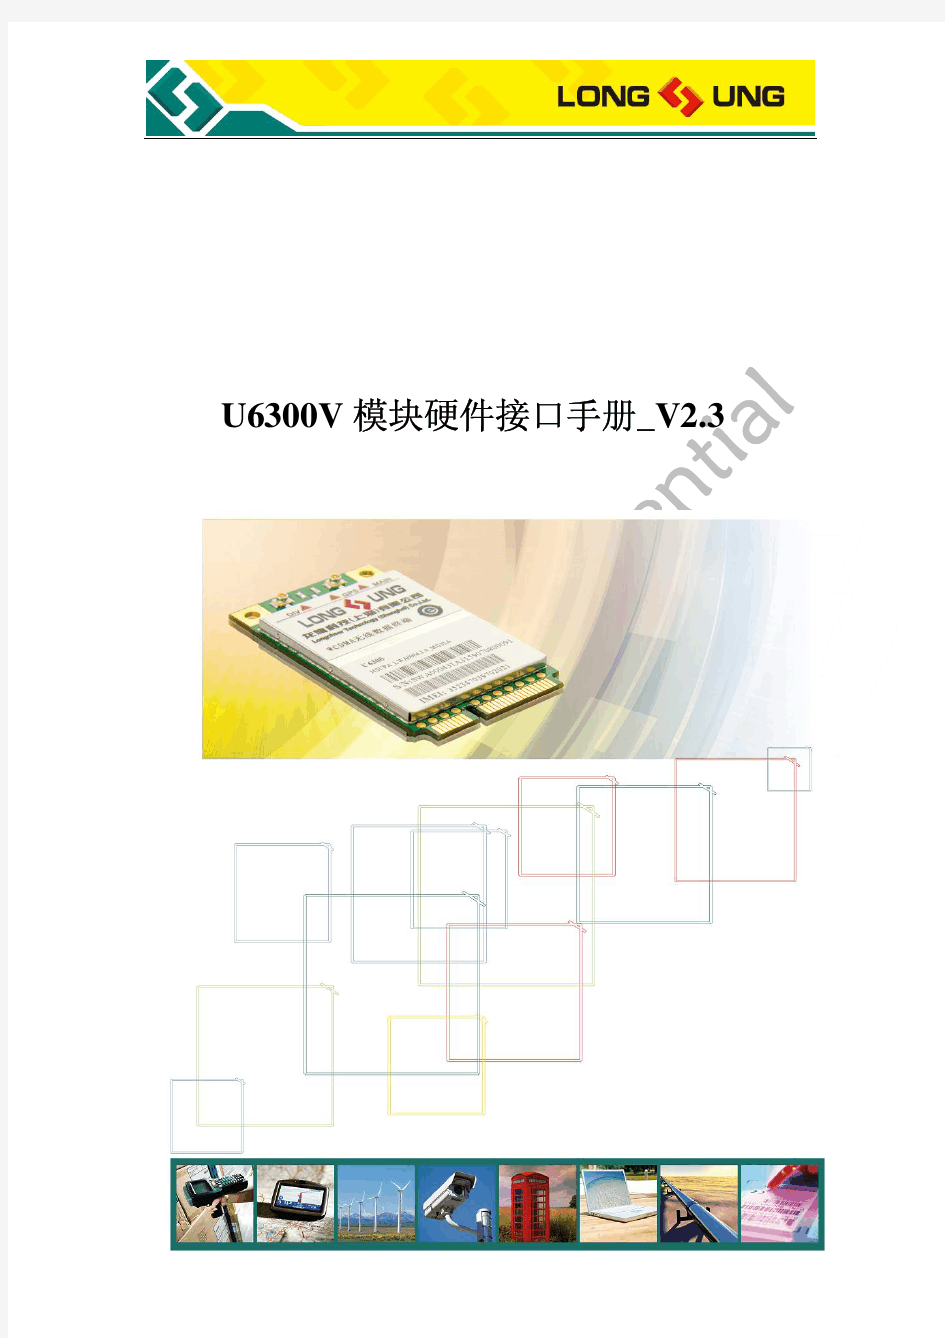 U6300V 模块硬件接口手册_V2.3